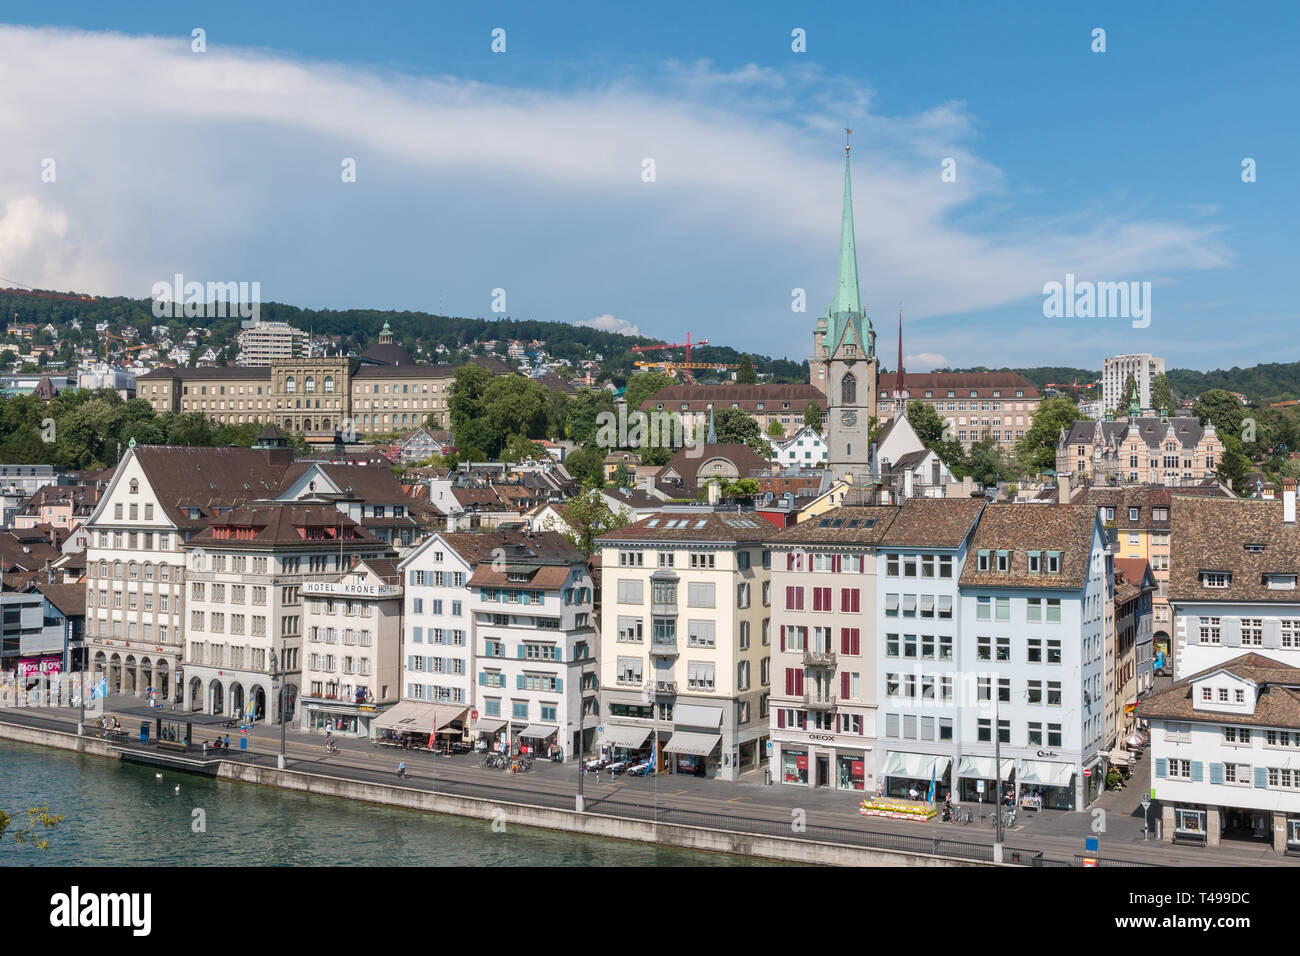 Zurich, Suiza - 21 de junio de 2017: Vista aérea del histórico centro de la ciudad de Zúrich y el río Limmat desde el parque Lindenhof, Zurich, Suiza. Tierra de verano Foto de stock